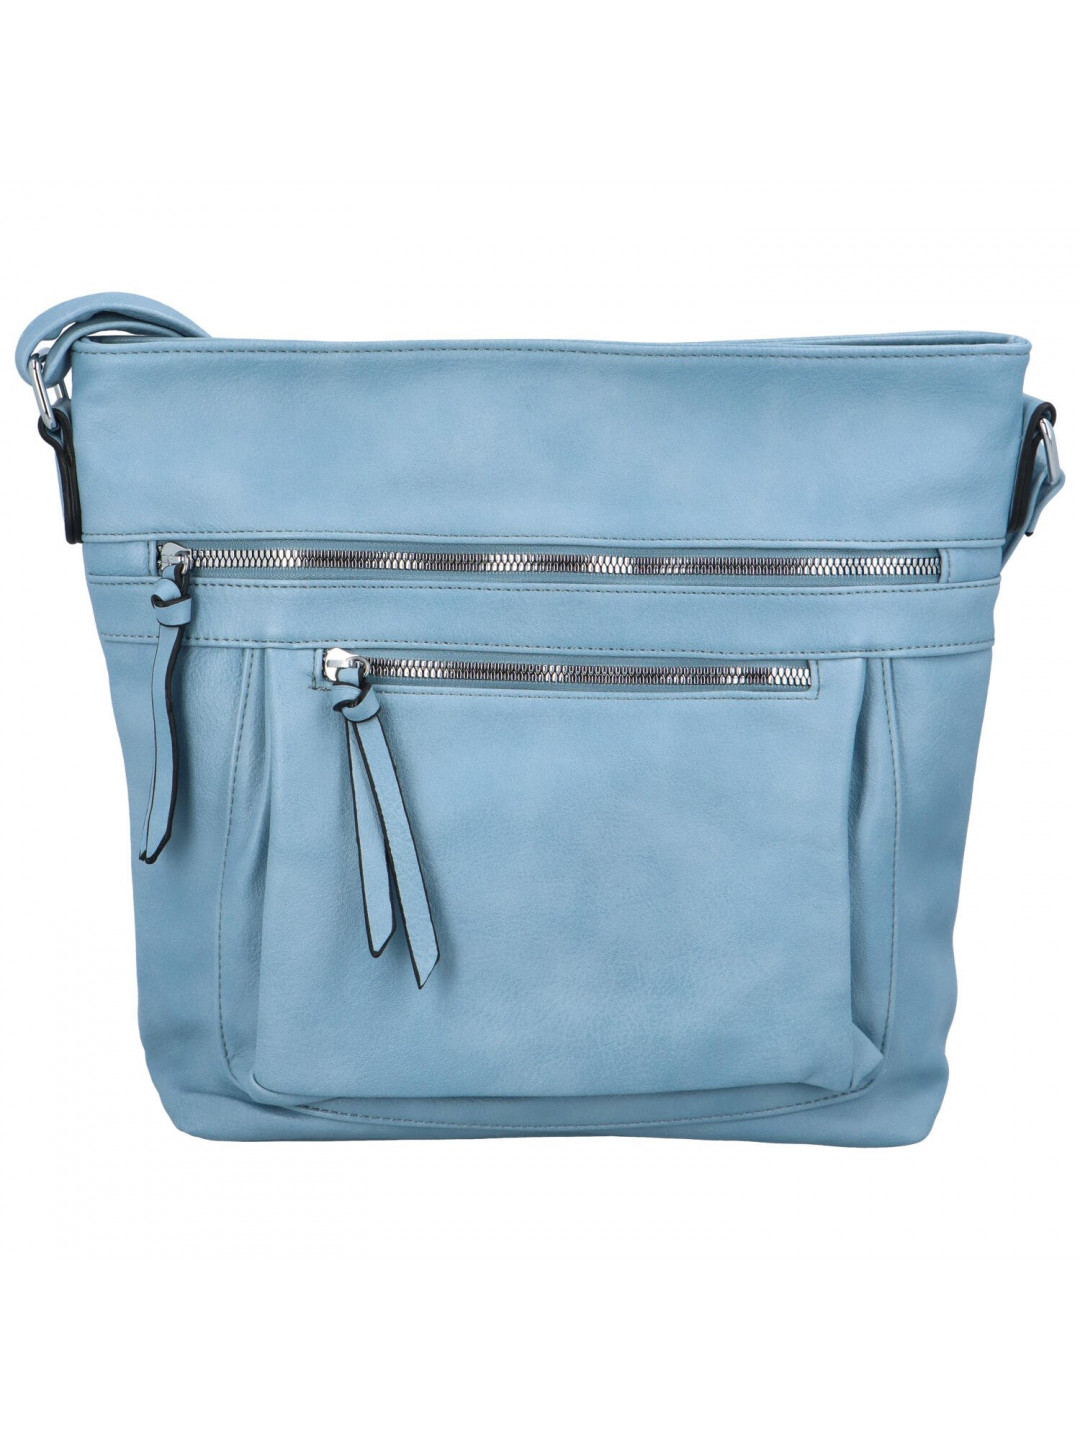 Dámská crossbody kabelka džínově modrá – Paolo bags Xanthe